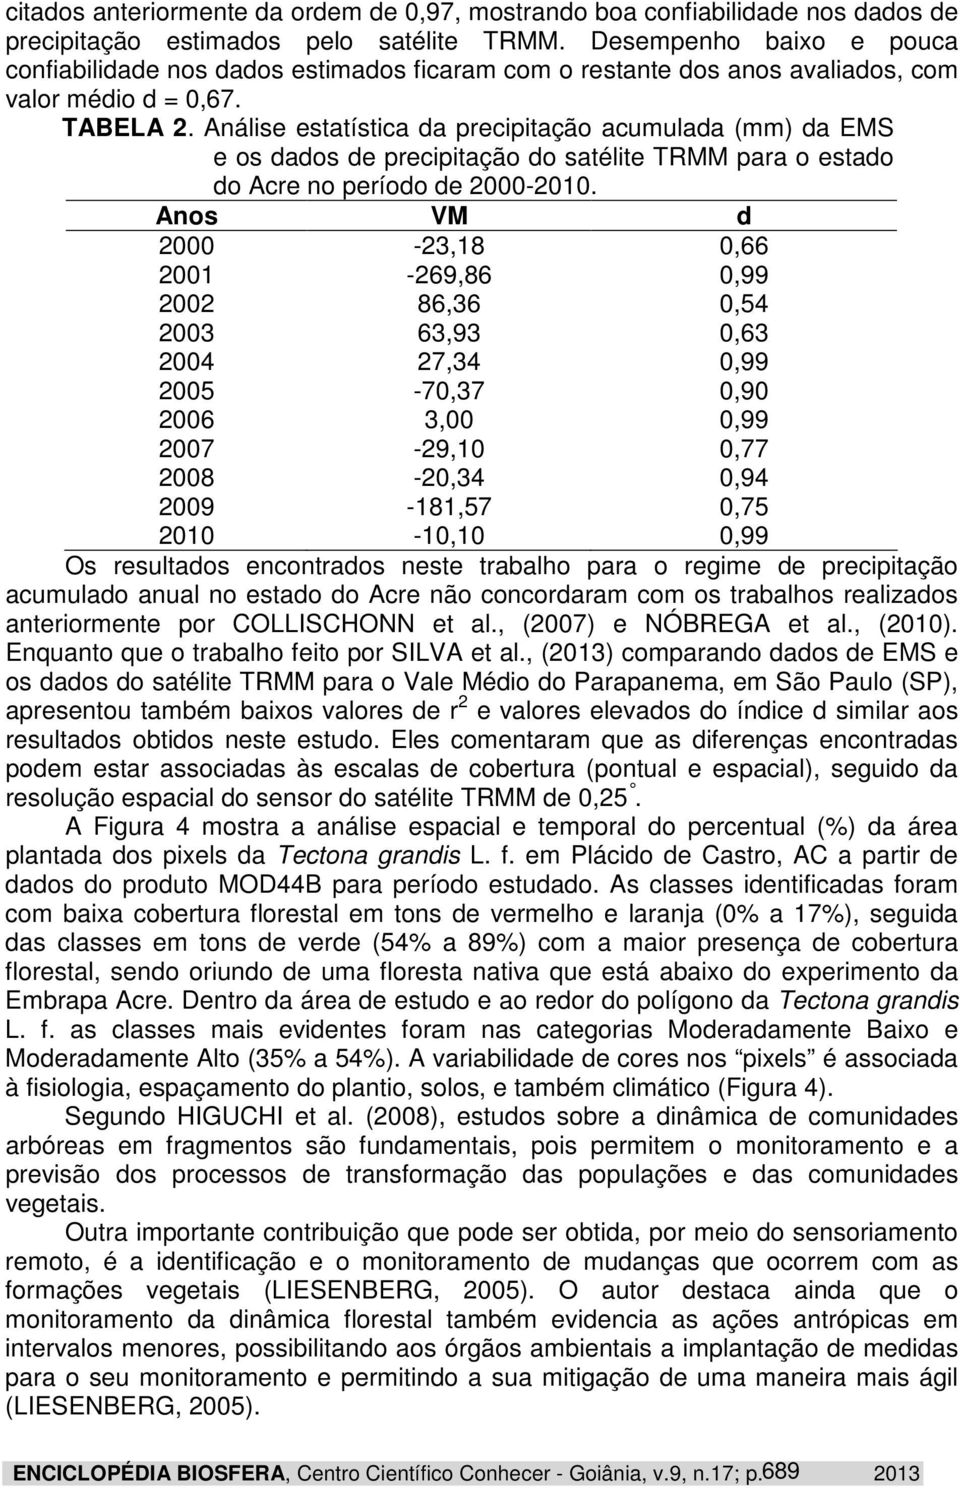 Análse estatístca da precptação acumulada (mm) da EMS e os dados de precptação do satélte TRMM para o estado do Acre no período de 2000-2010.